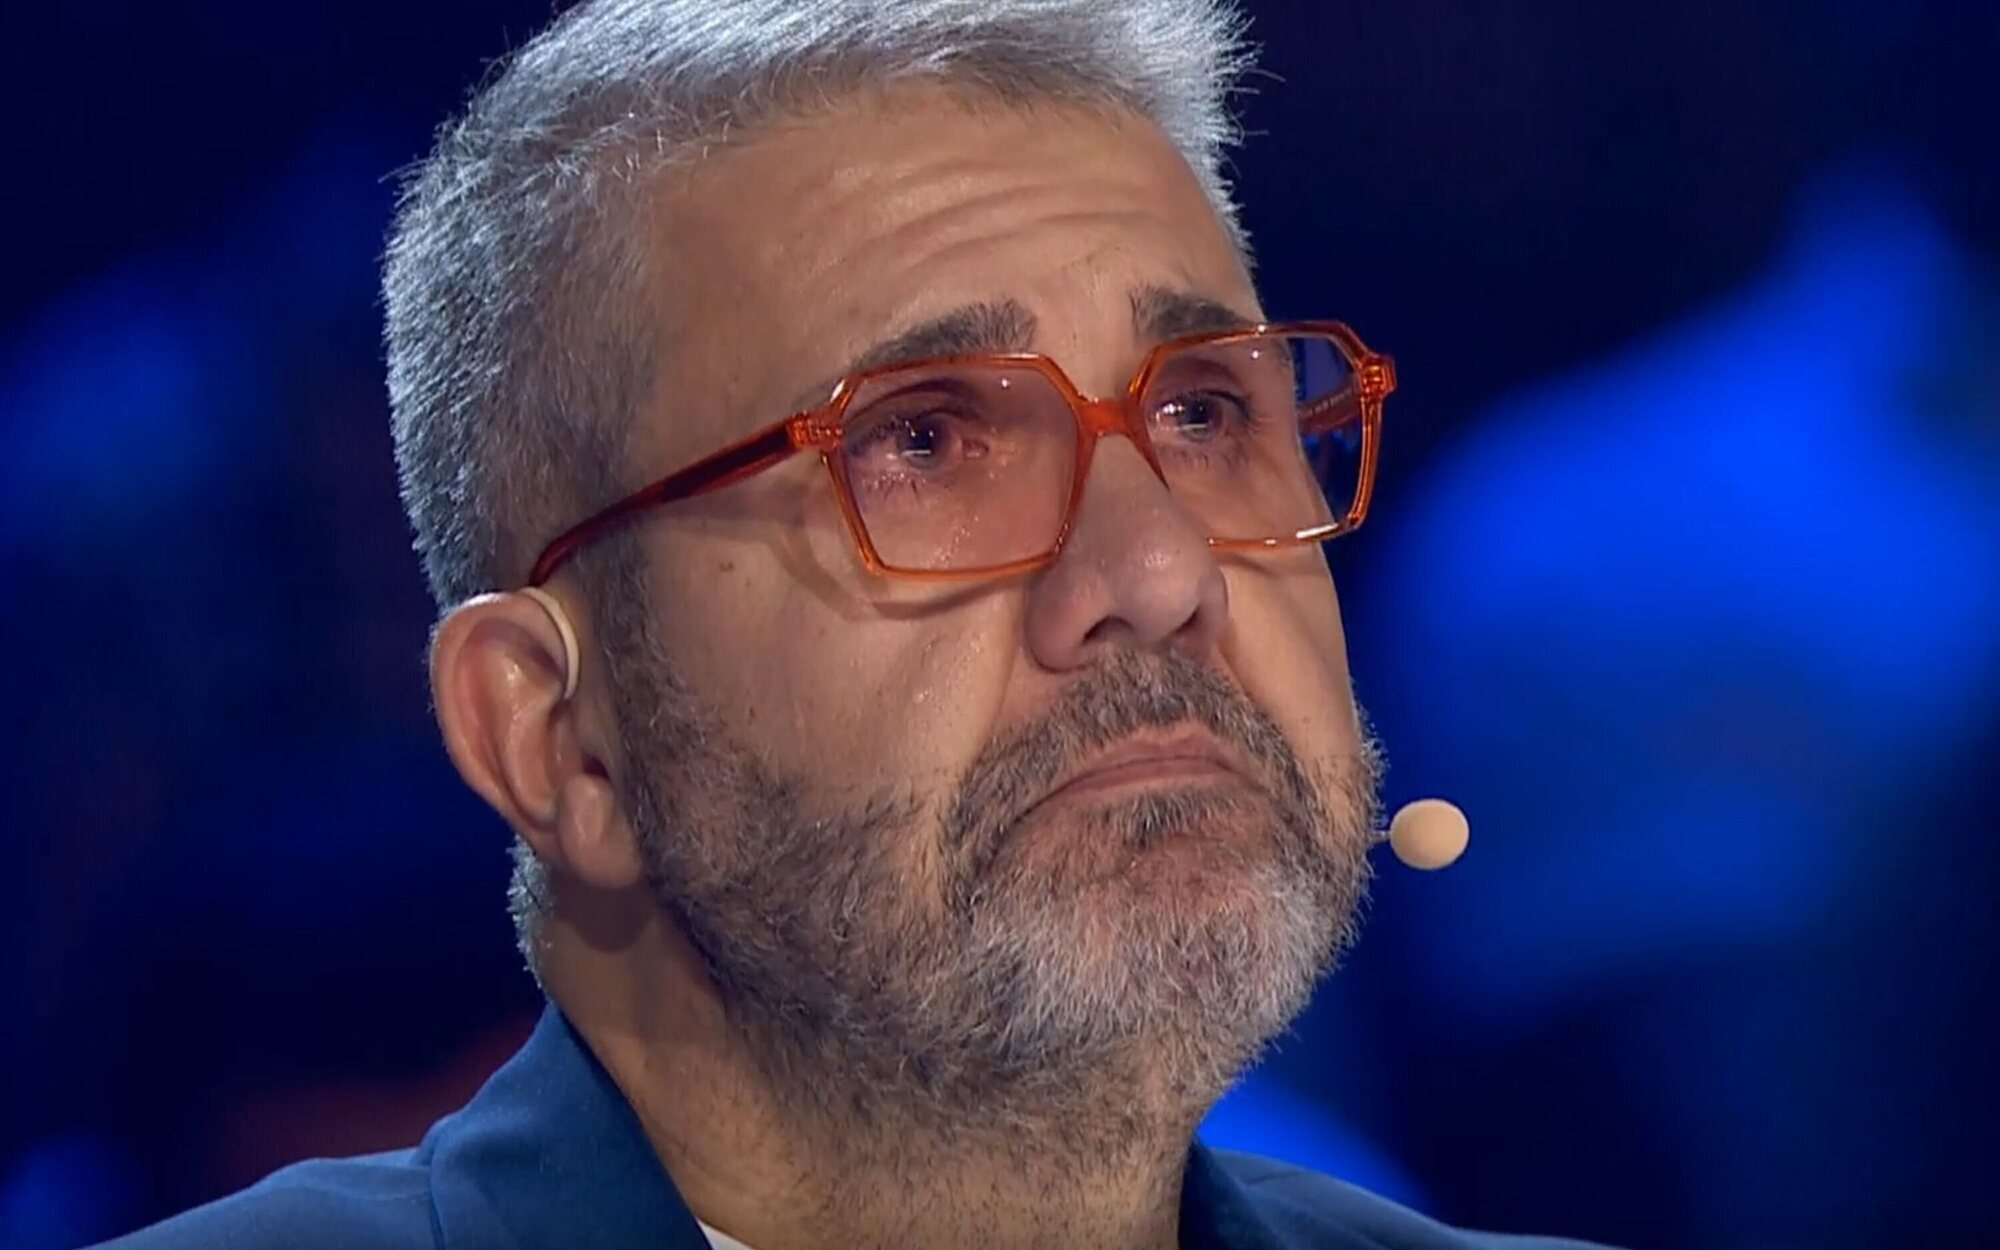 Florentino Fernández rompe a llorar al recibir un mensaje de su madre fallecida en 'Got Talent'